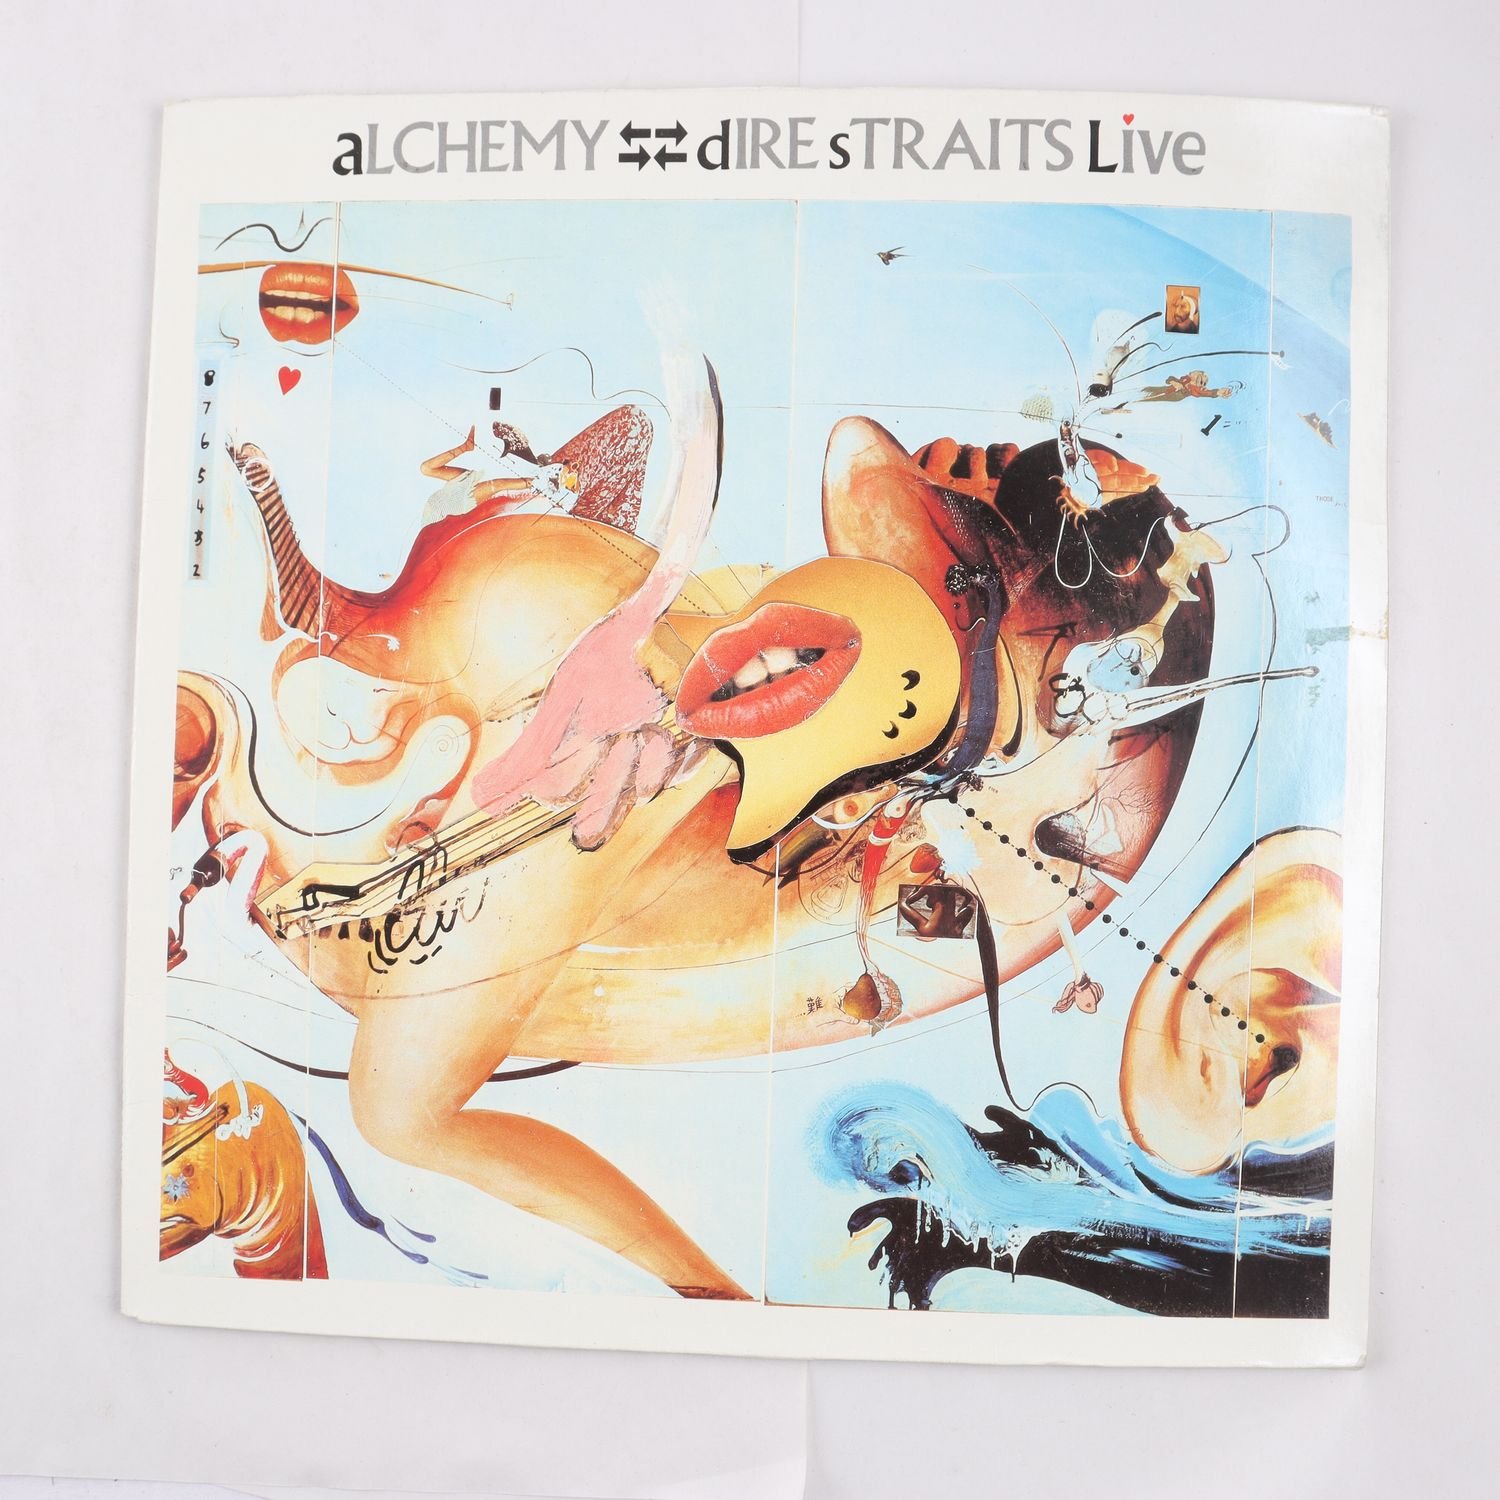 LP Dire Straits, Alchemy – Dire Straits Live